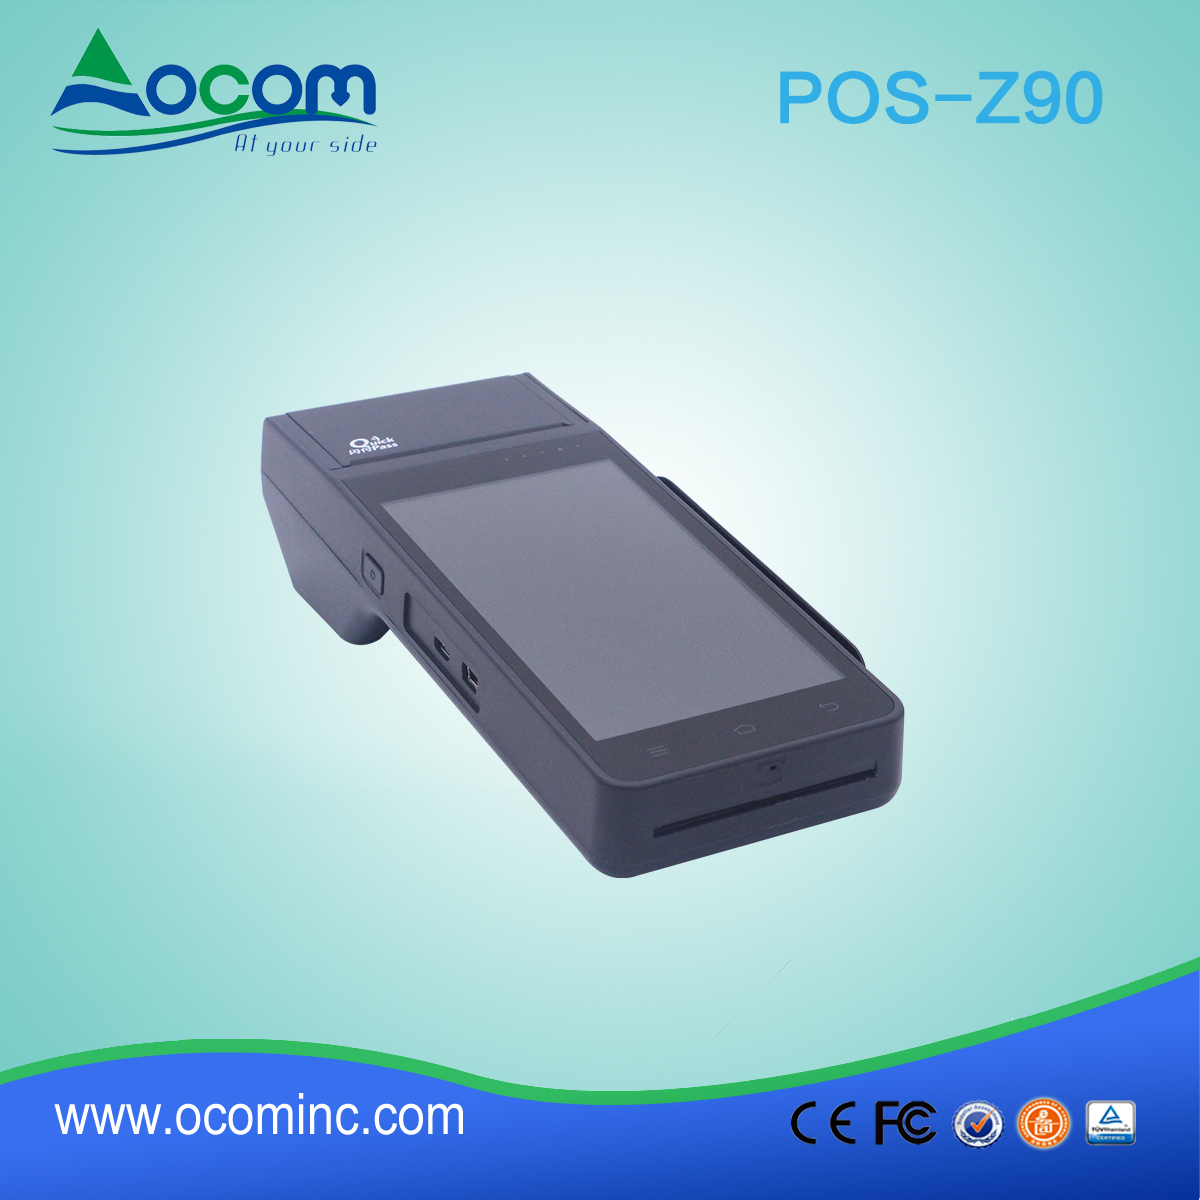 (pos-z90) Baixo custo Android handheld pos terminal com impressora térmica